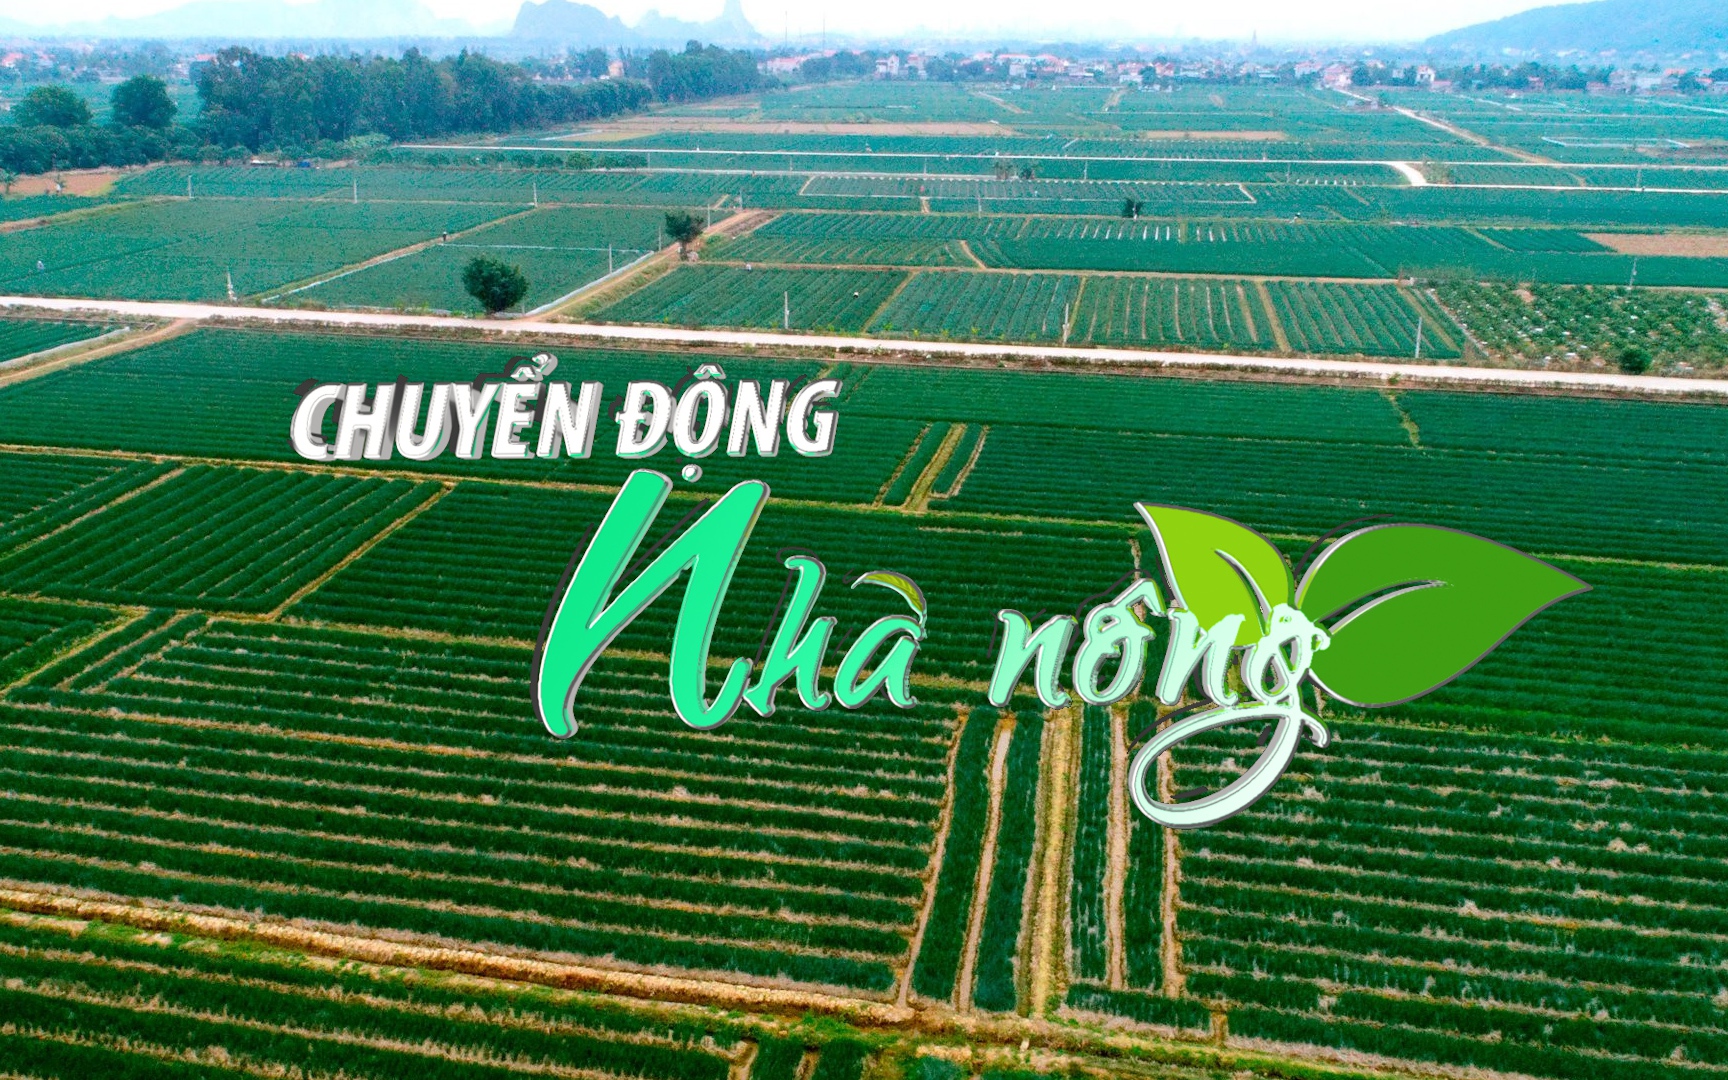 Chuyển động Nhà nông 12/9: Thị xã Kinh Môn (Hải Dương) hỗ trợ phân bón hữu cơ cho 75 ha tỏi vụ đông